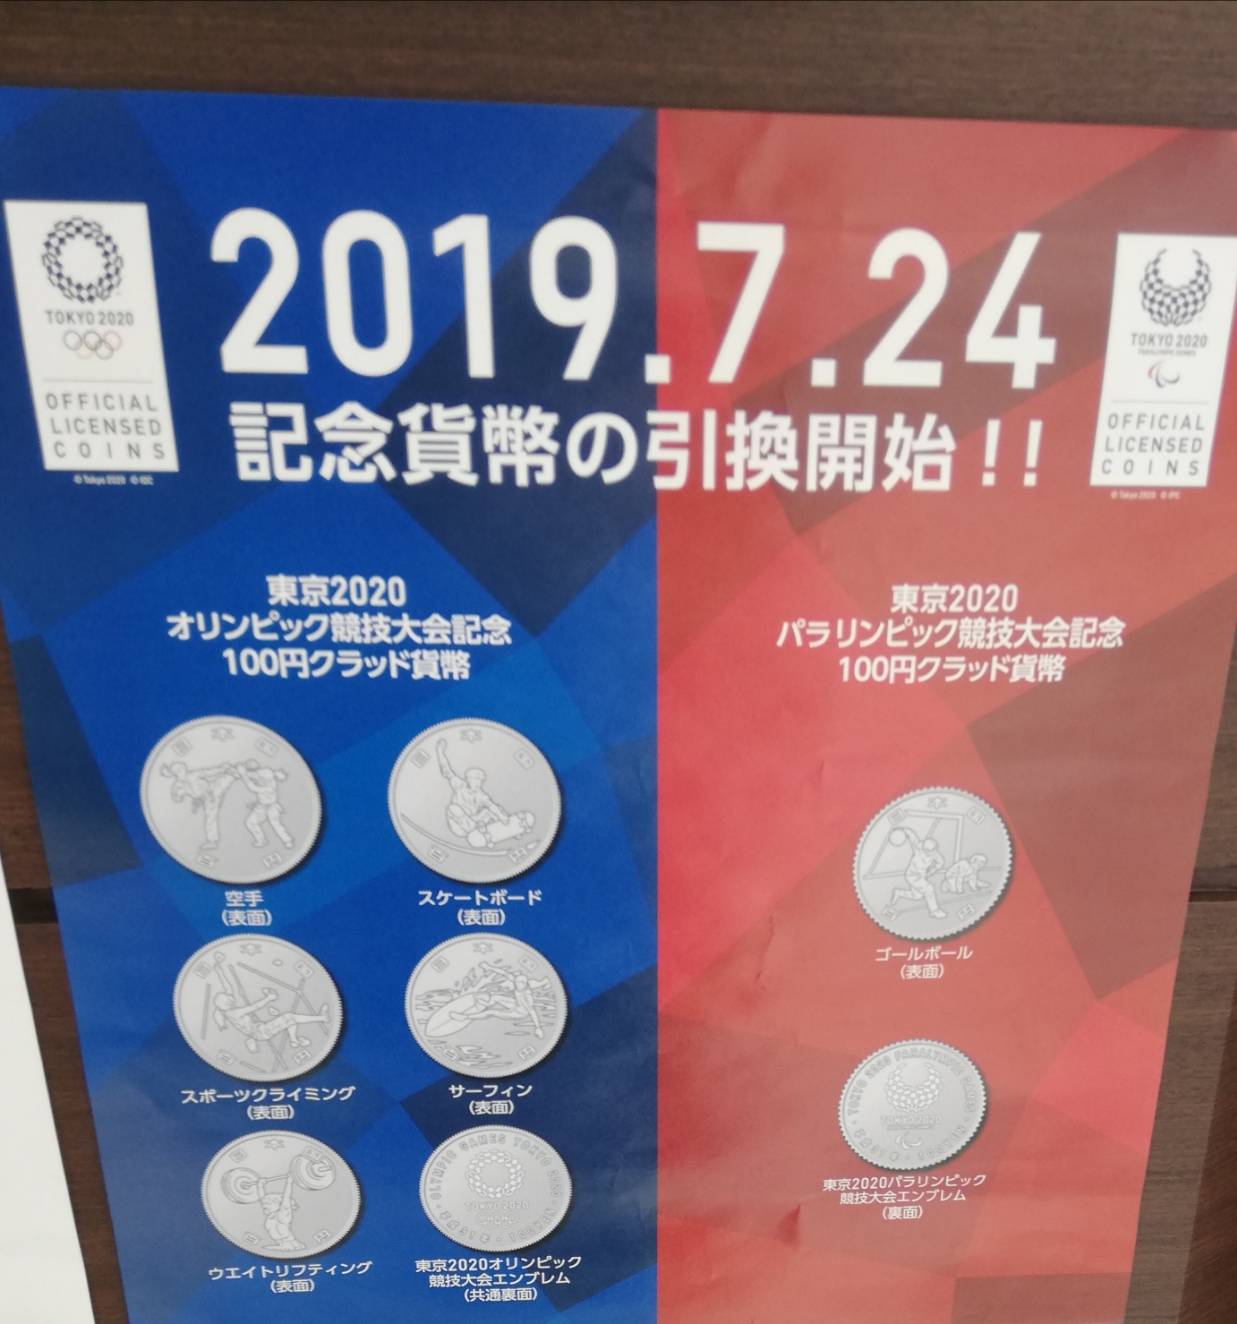 記念硬貨 東京2020オリンピック の引換が2019年7月24日より開始